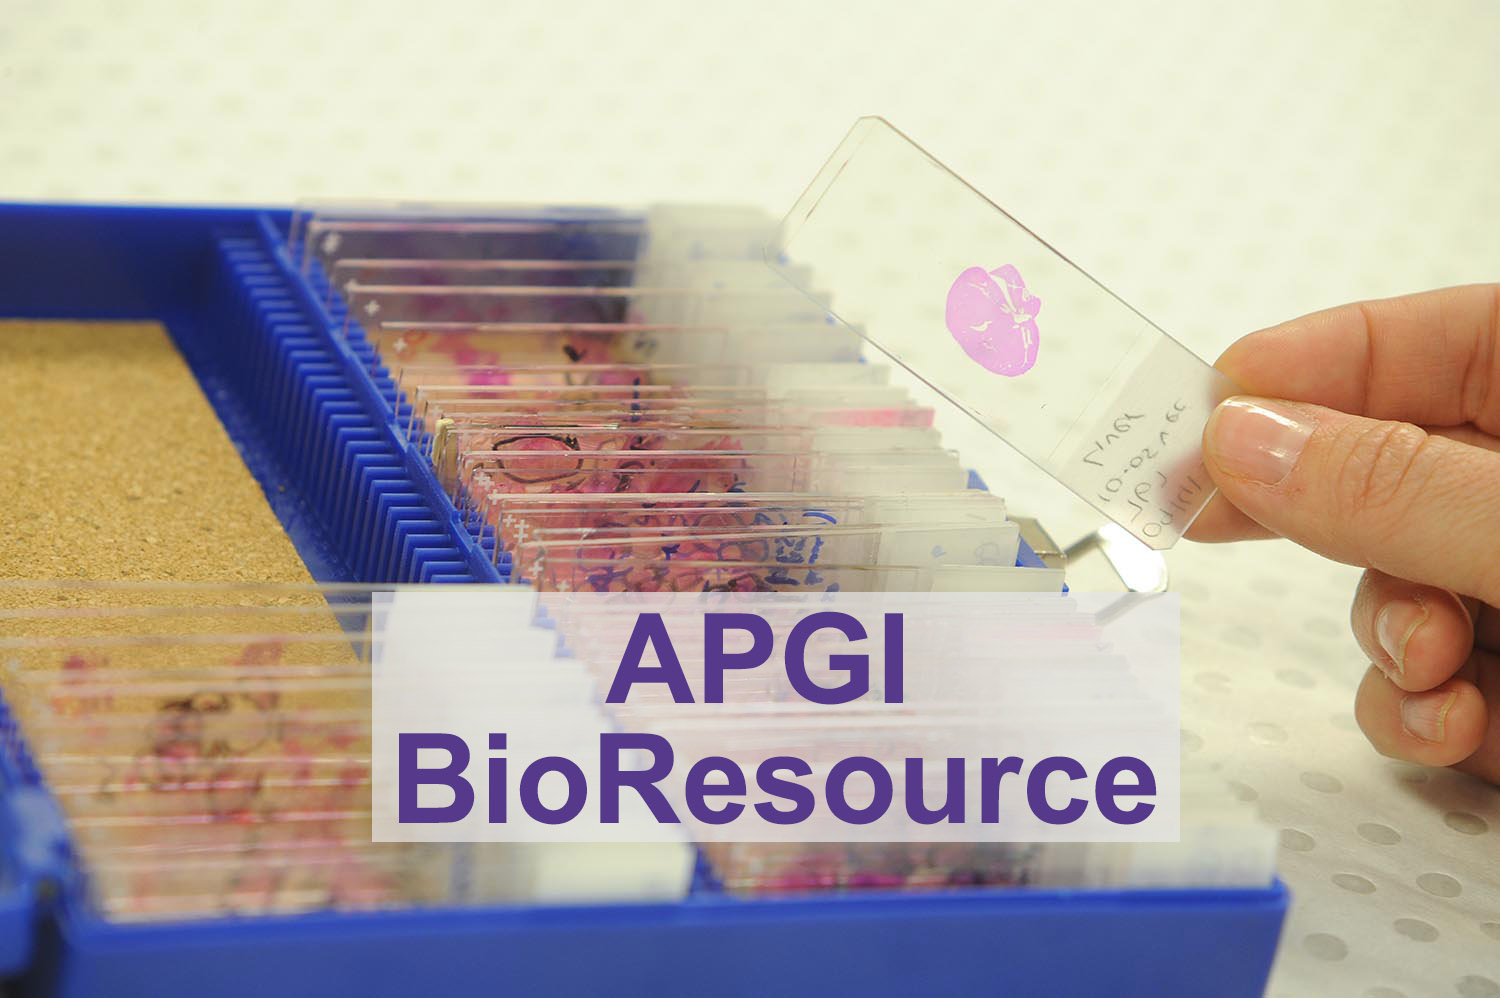 APGI BioResource